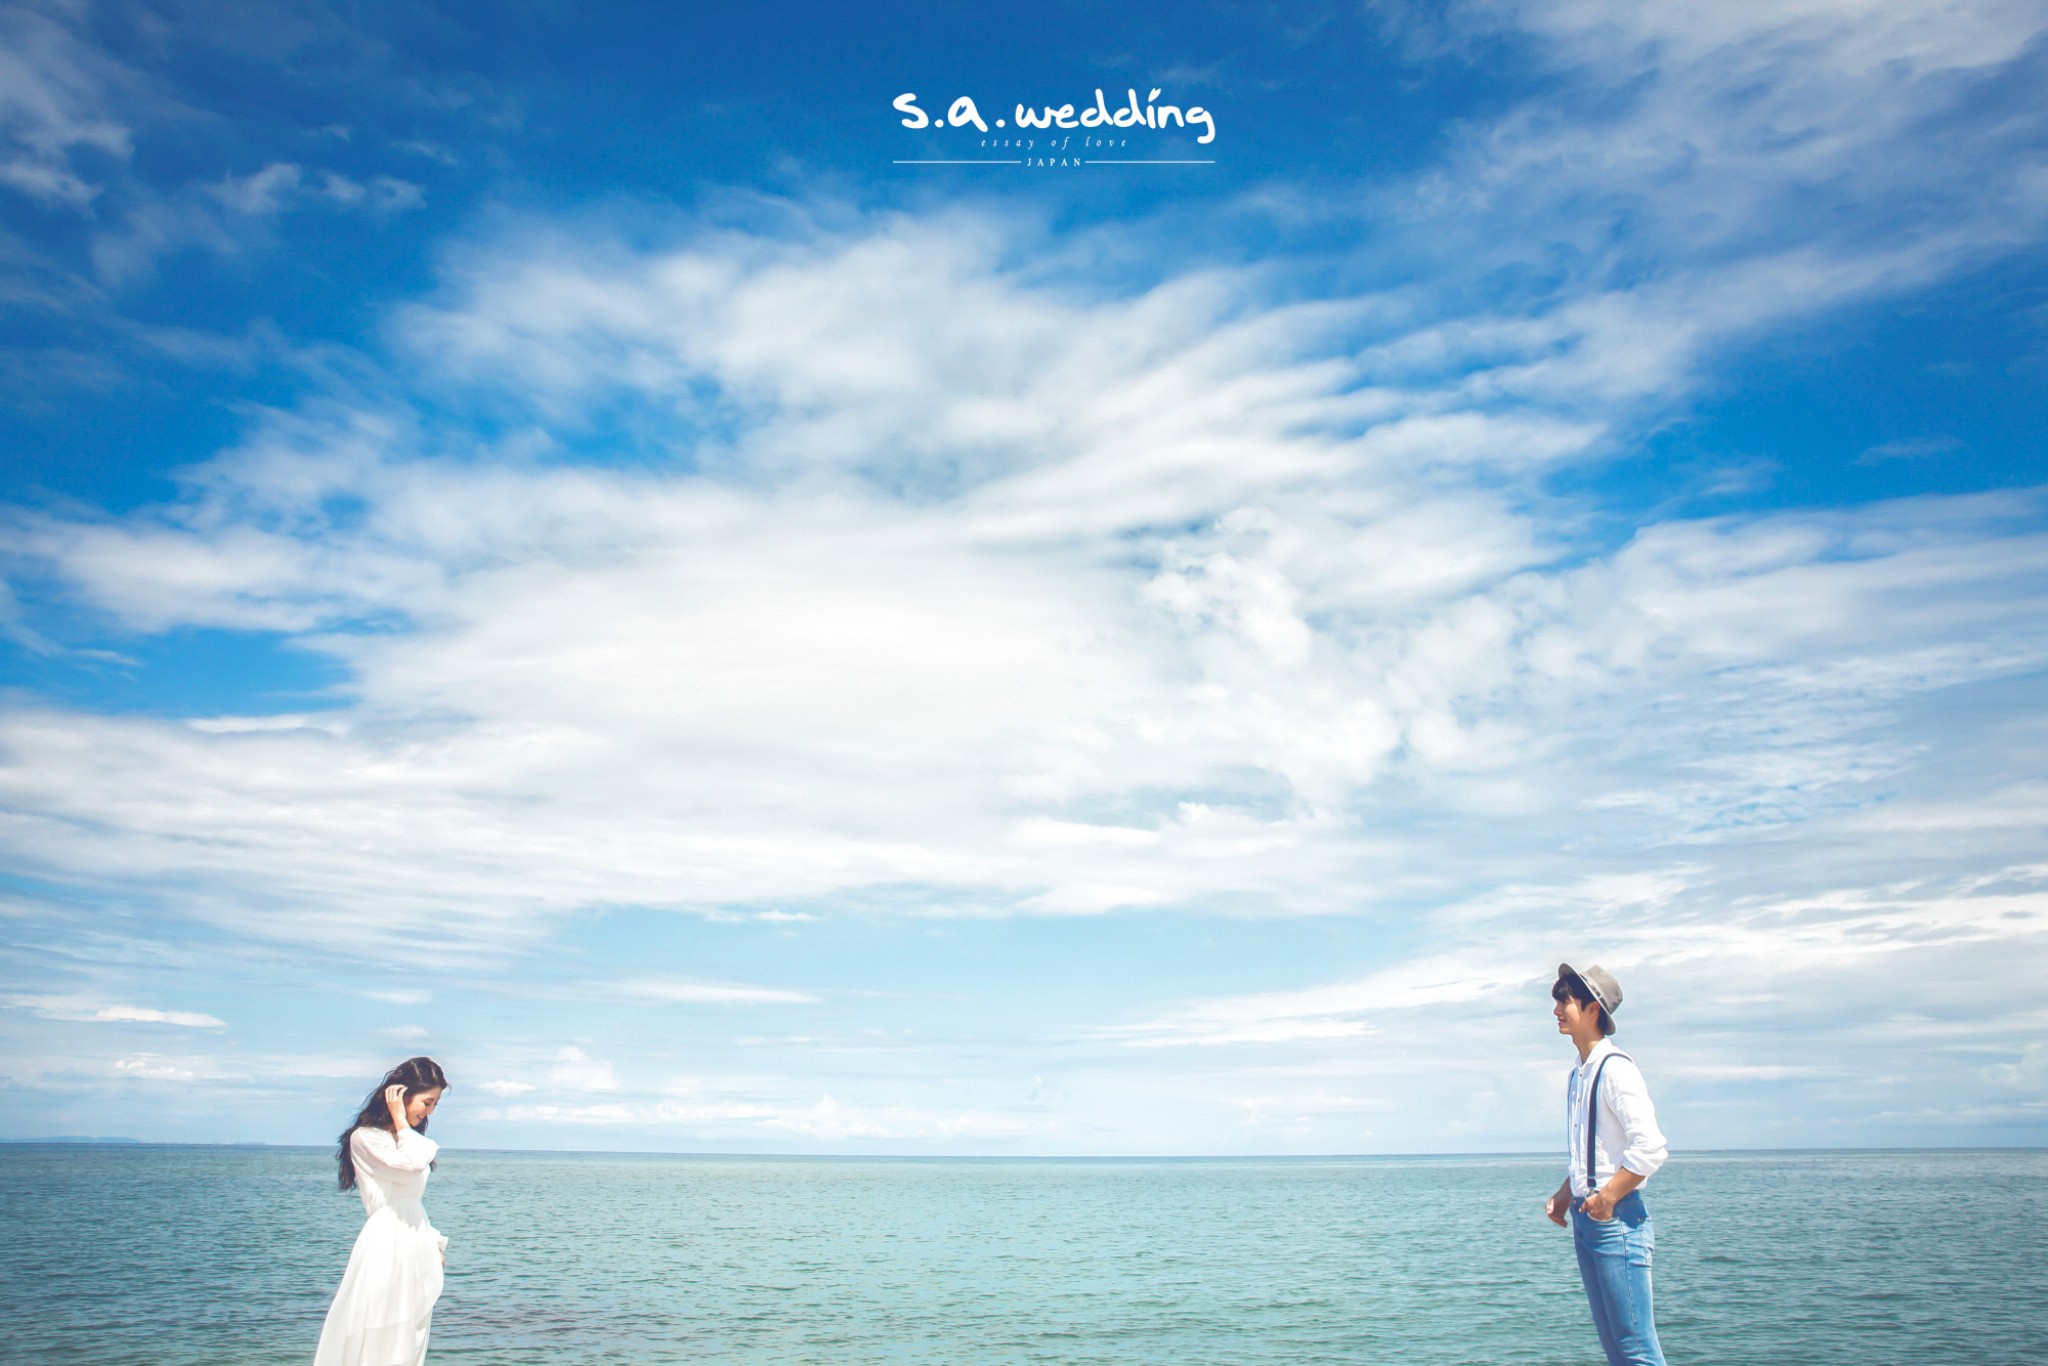 日本婚攝 室外婚紗攝影 s.a. wedding 沖繩婚攝 pre-wedding